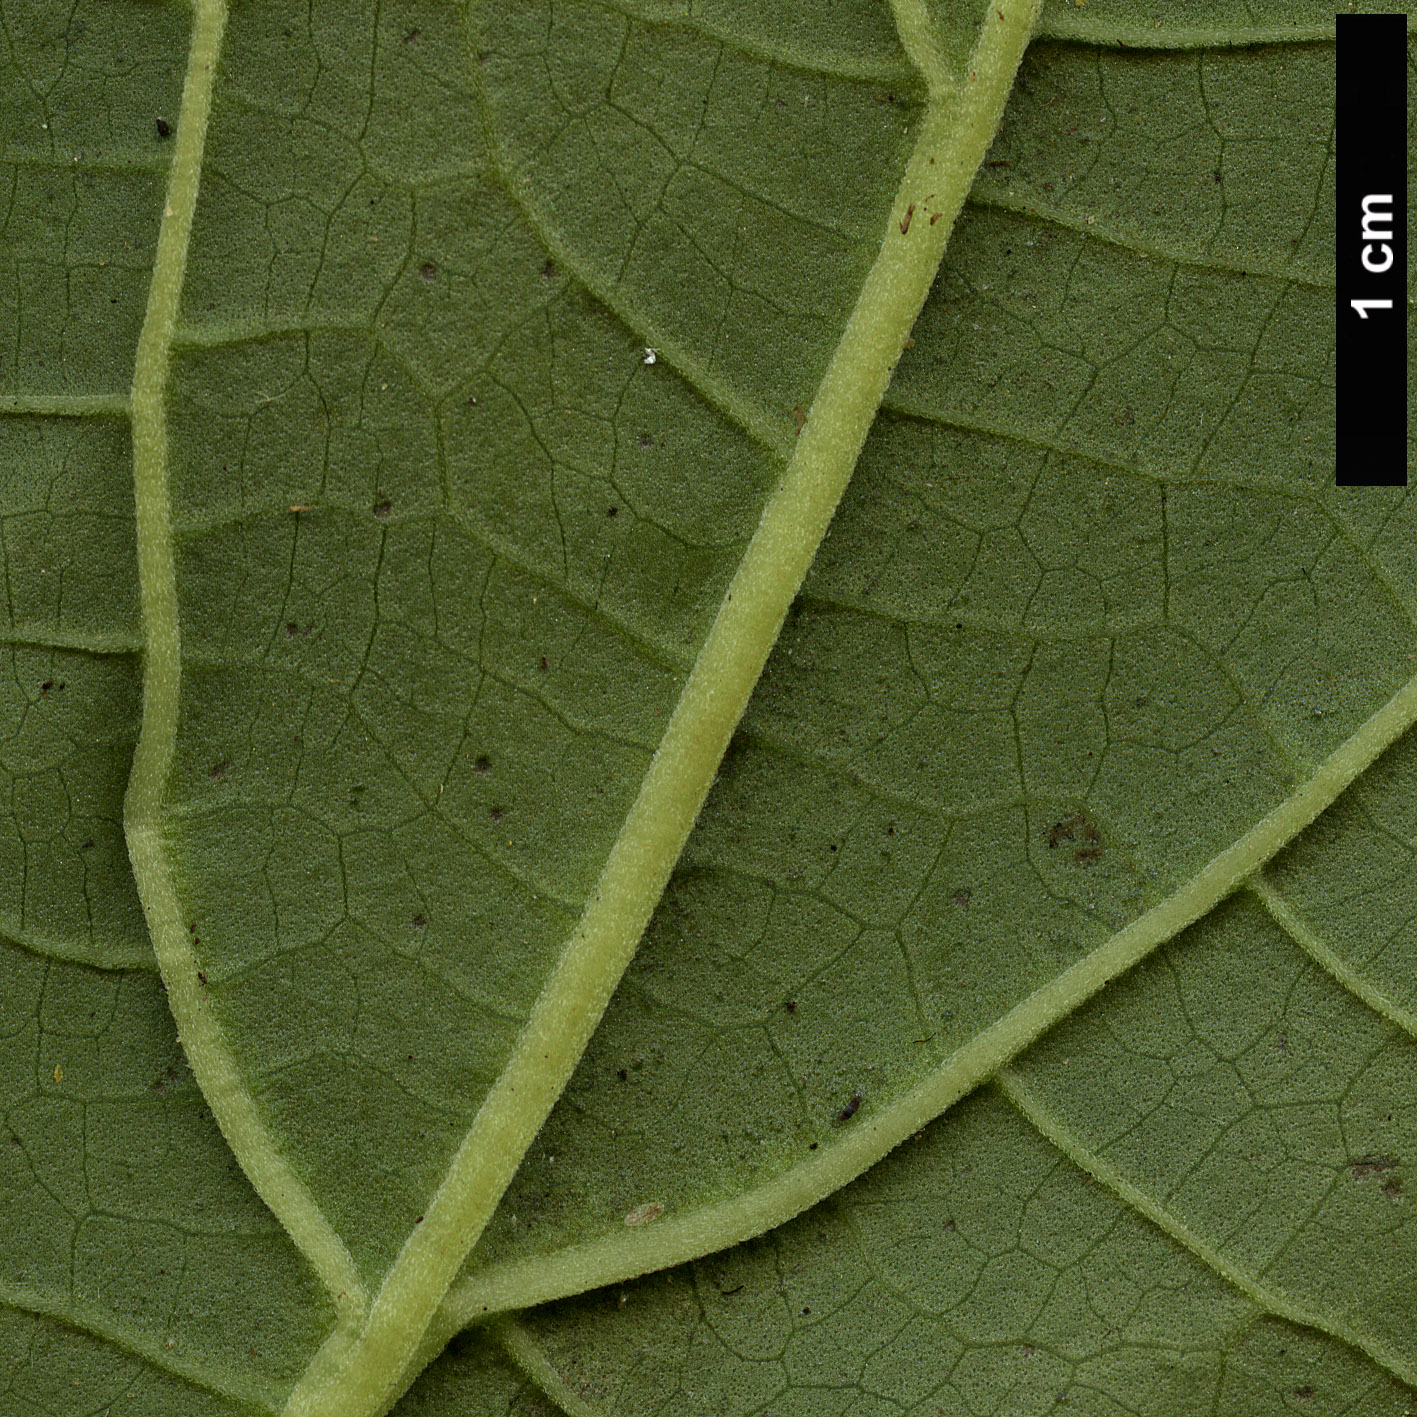 High resolution image: Family: Lamiaceae - Genus: Salvia - Taxon: divinorum